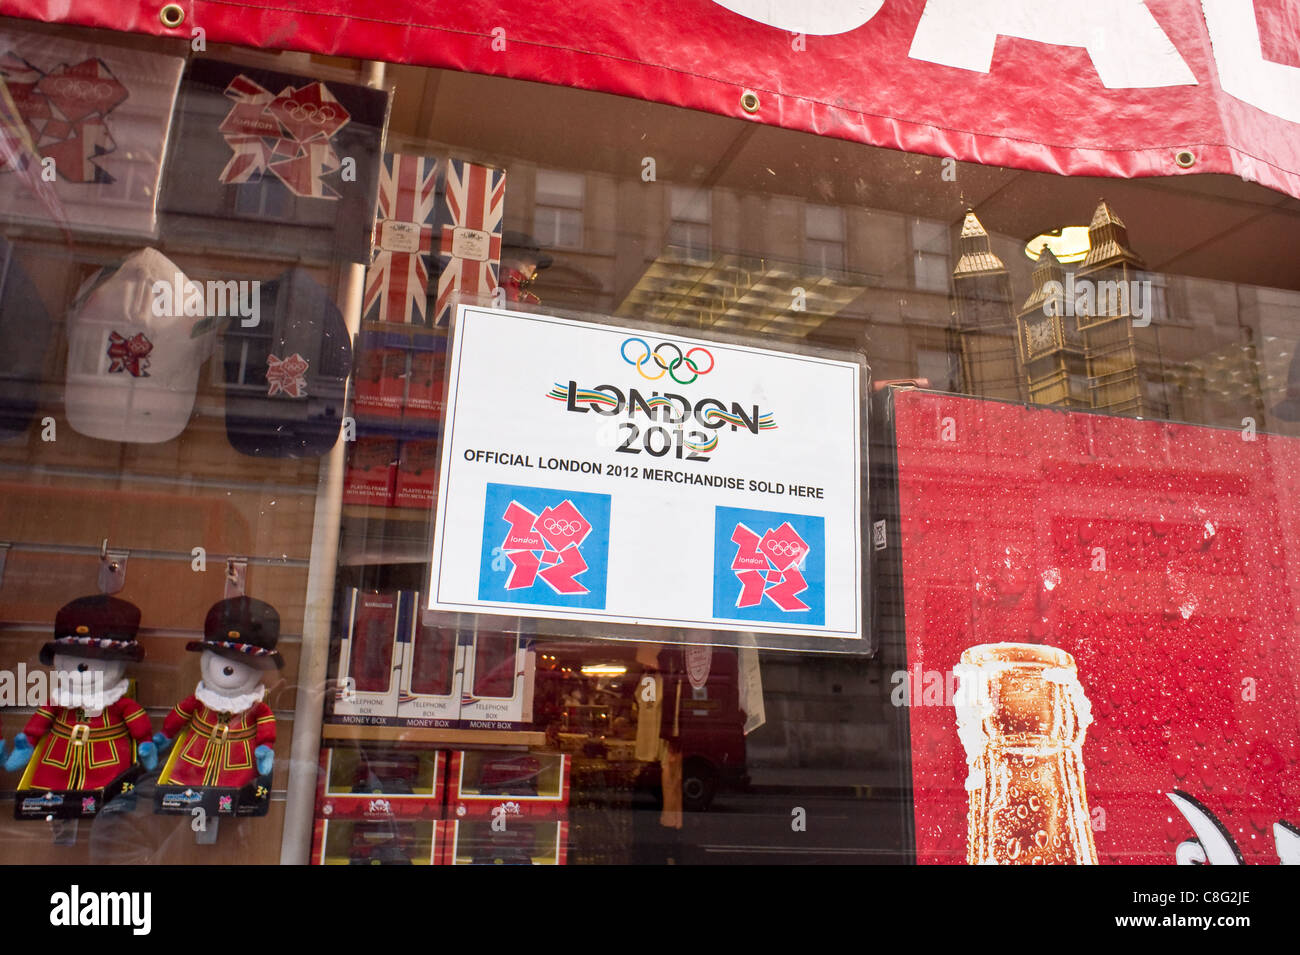 London,2011 magasin de souvenirs des Jeux olympiques de Londres 2012 les stocks de marchandise Banque D'Images